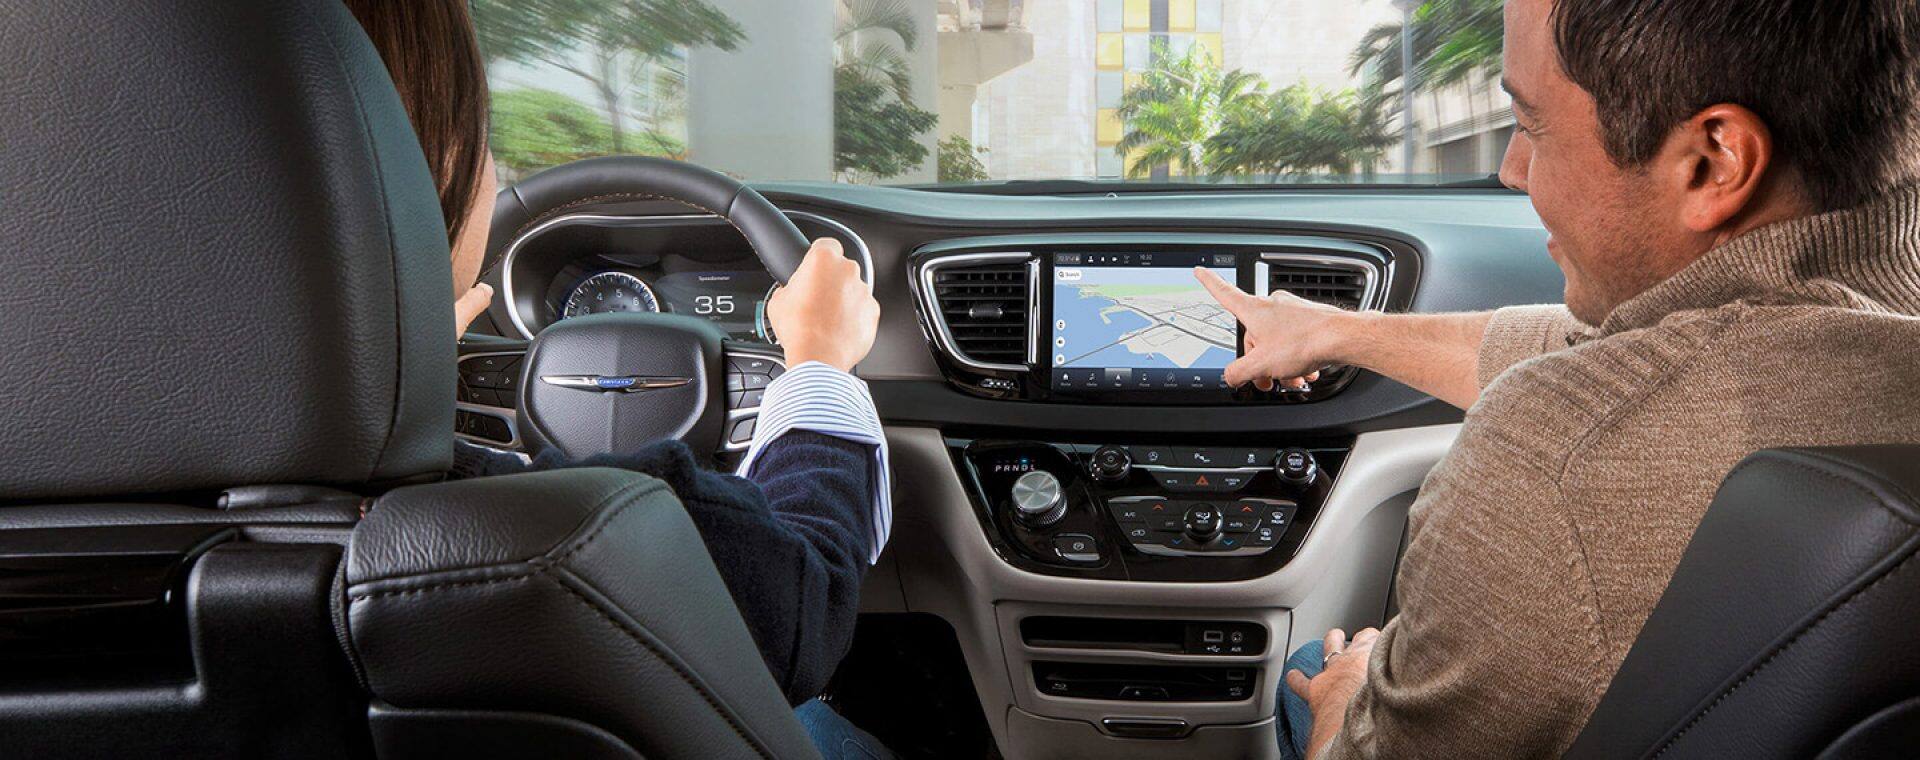 Uconnect - Chrysler Uconnect System Navigation Features